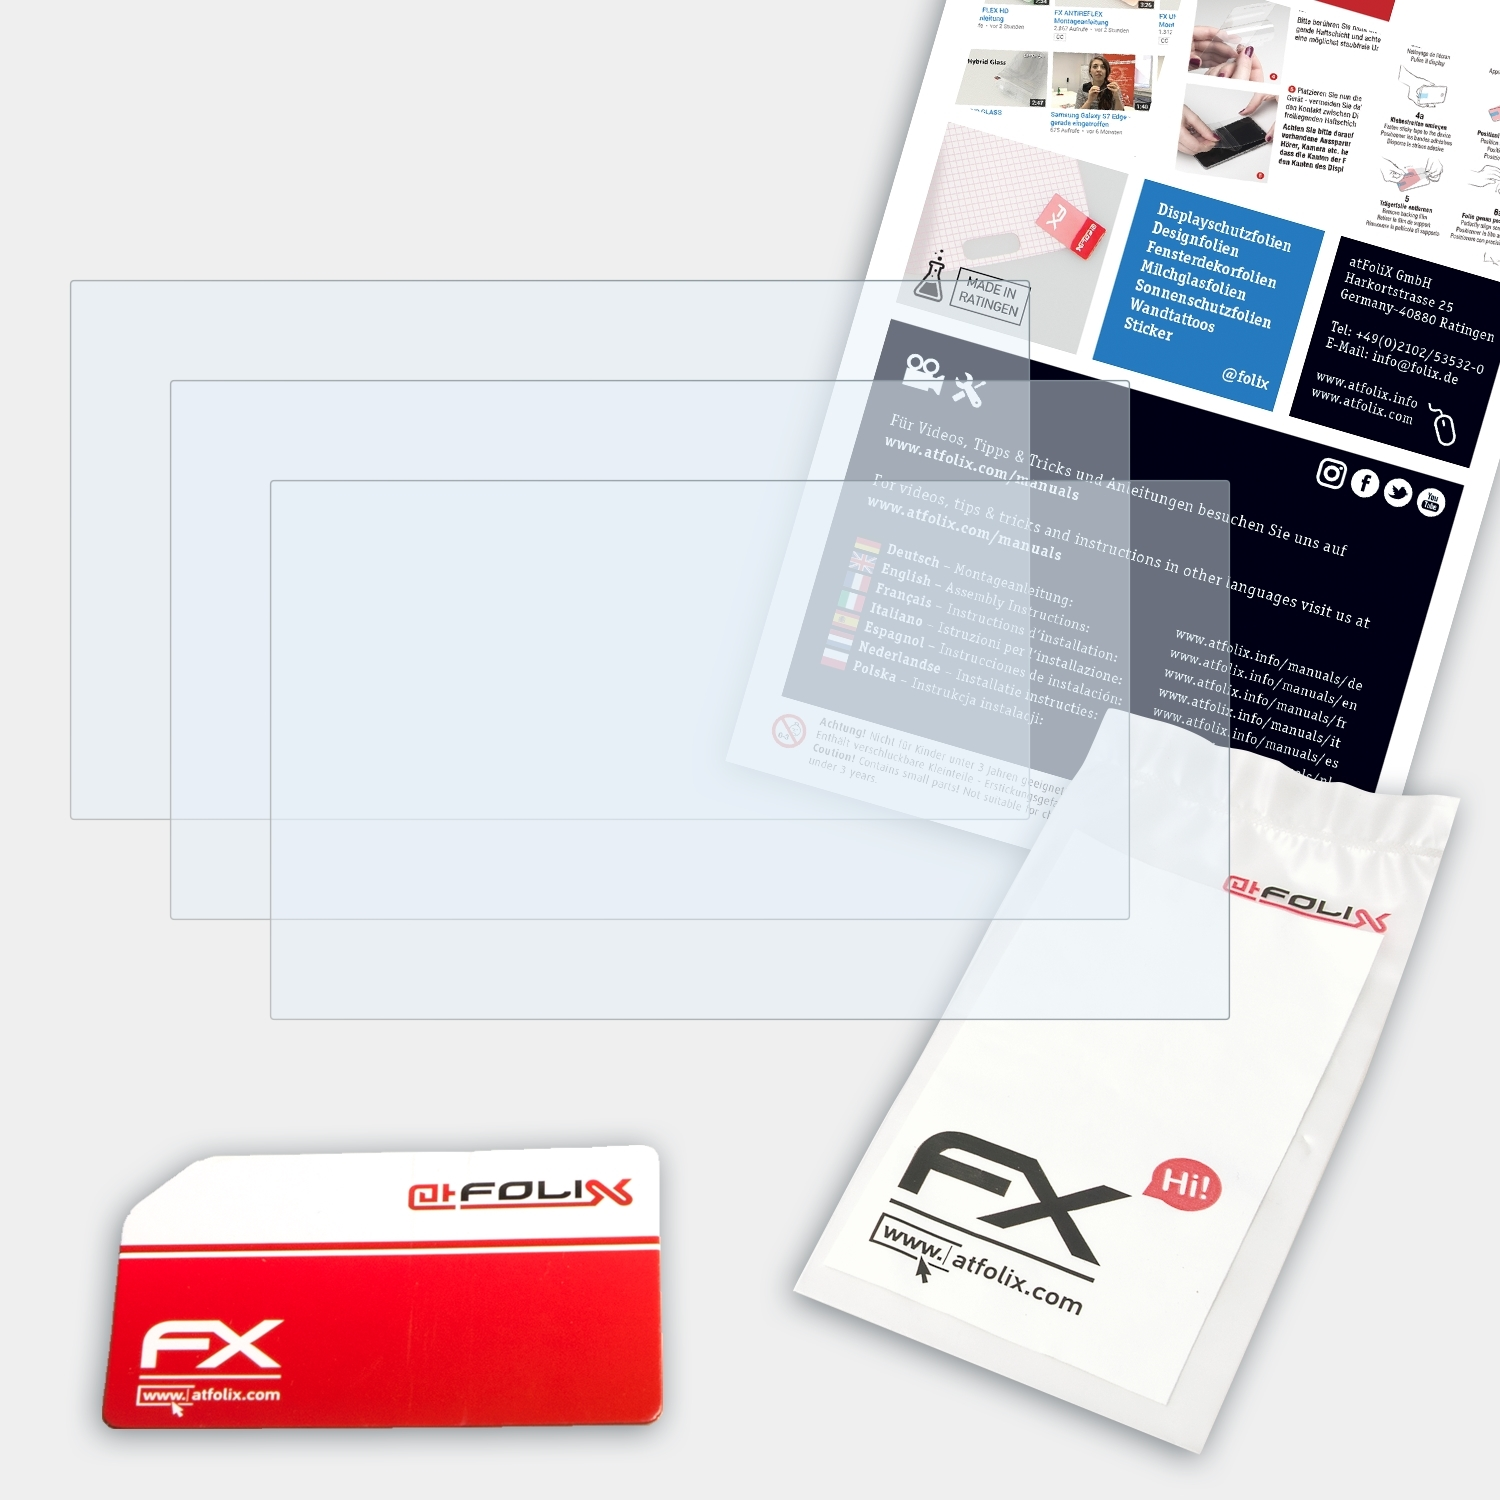 ATFOLIX 3x FX-Clear Displayschutz(für Pioneer Avic-F970DAB / F980DAB)